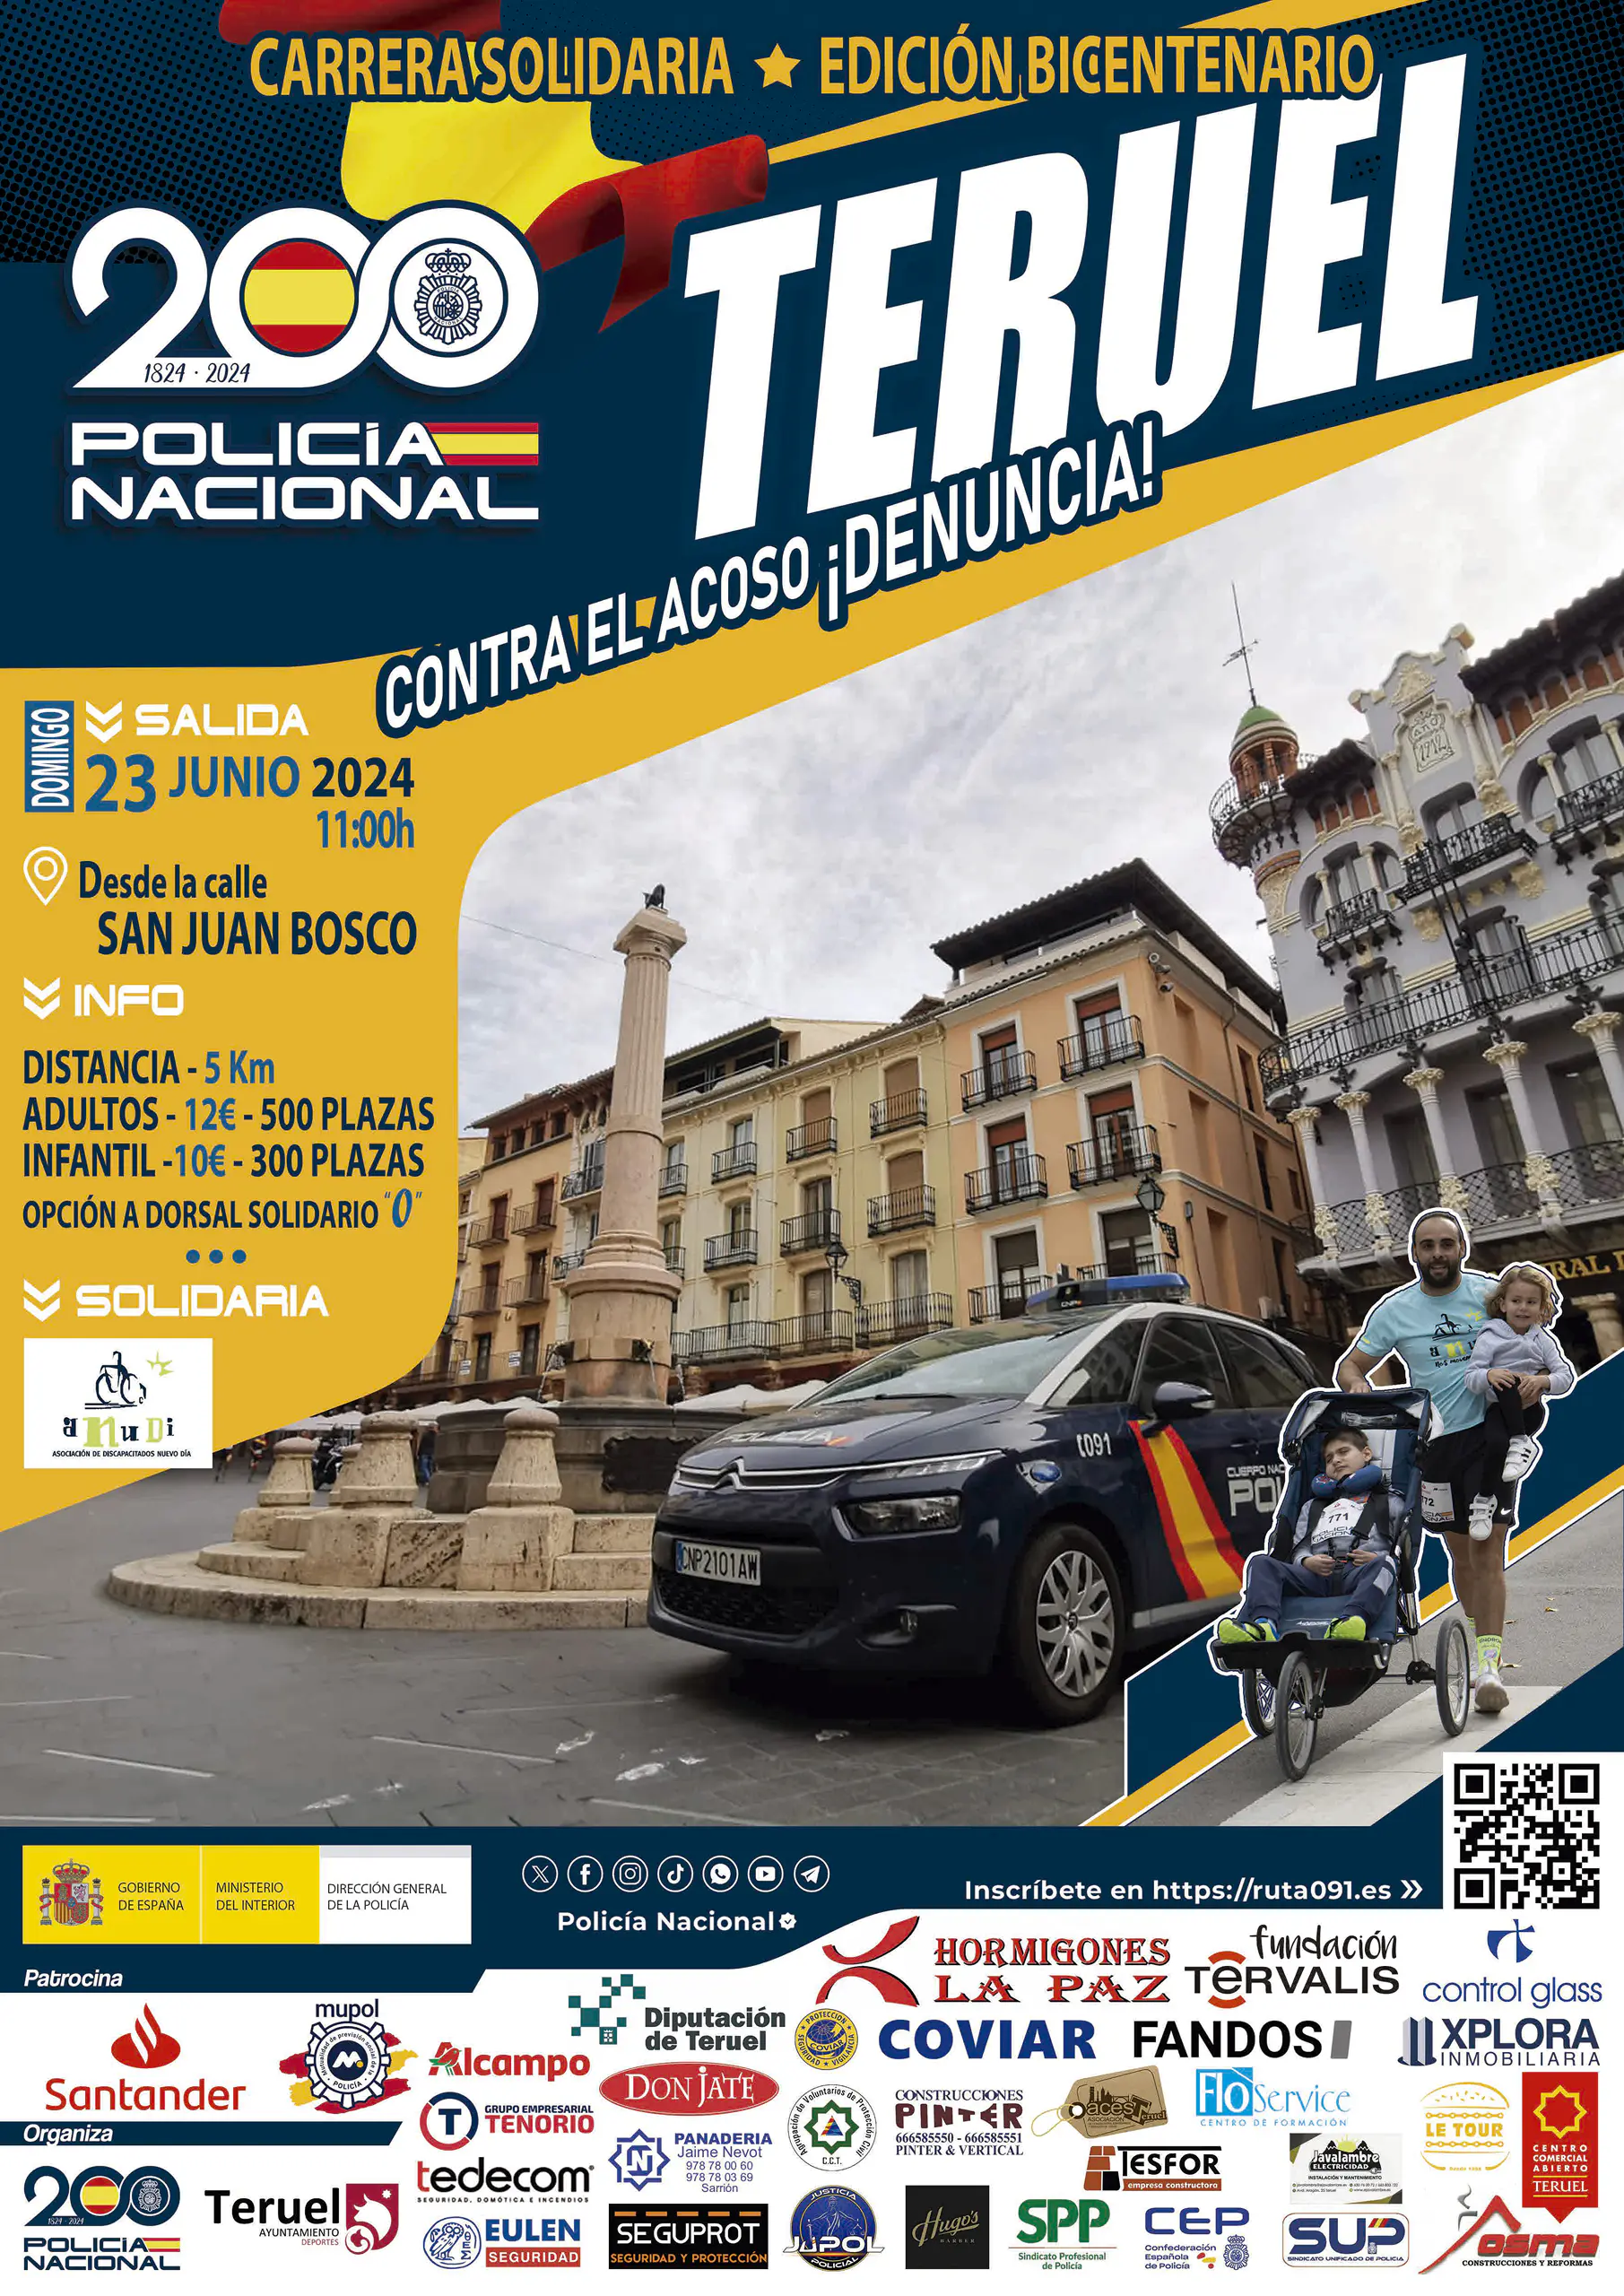 Carrera solidaria Teruel 2024